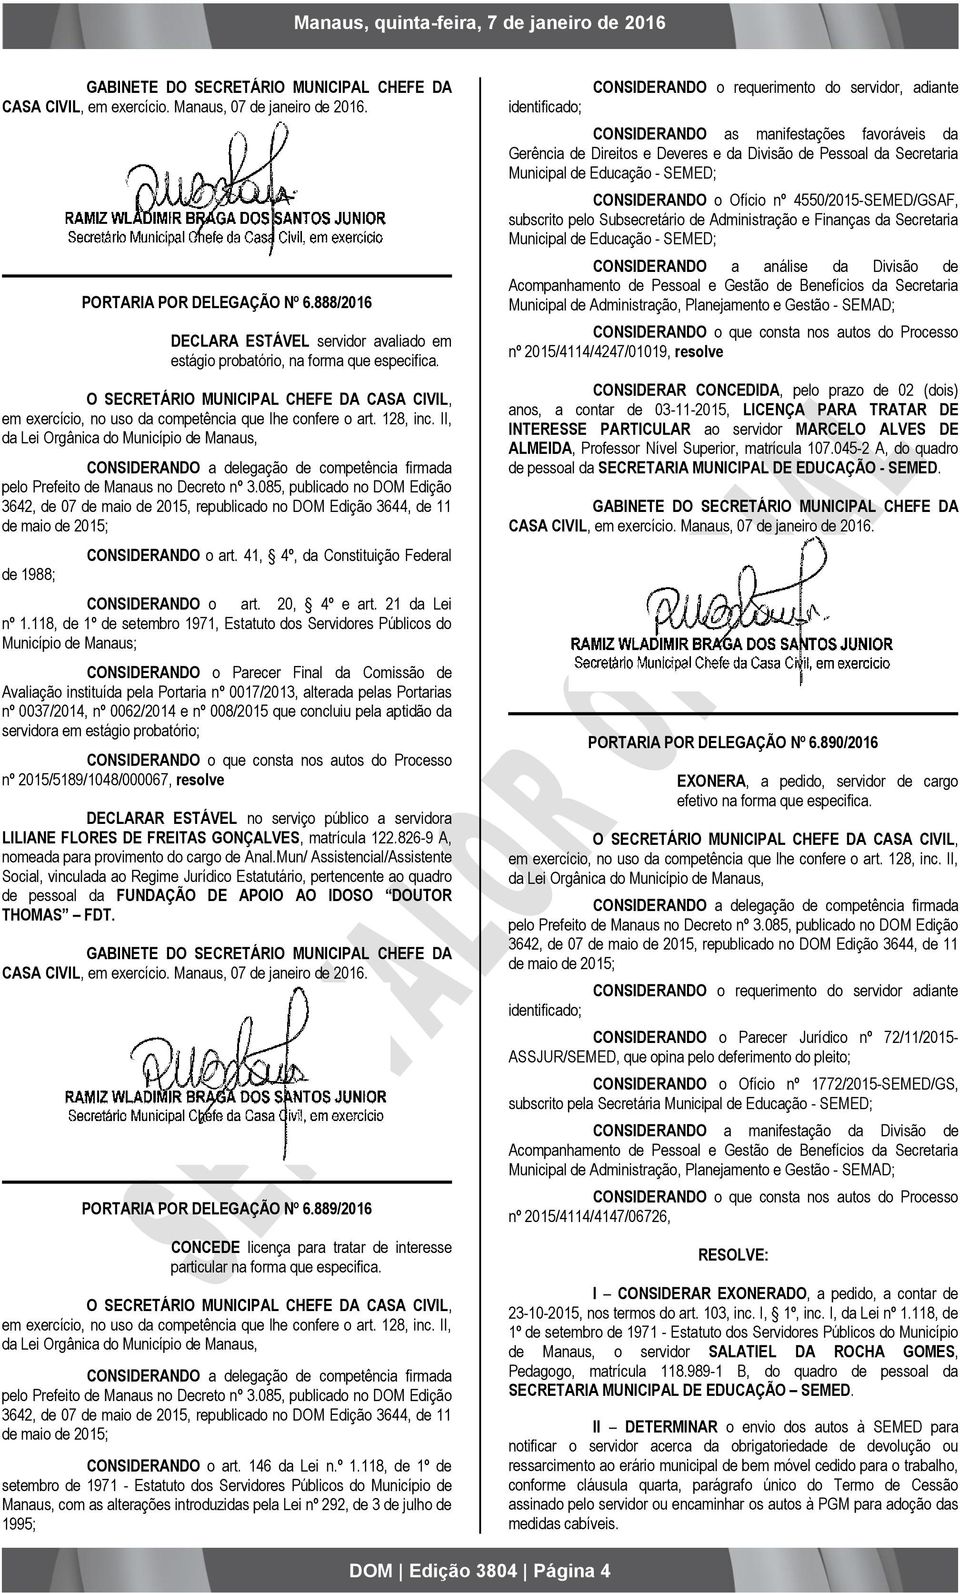 128, inc. II, da Lei Orgânica do Município de Manaus, pelo Prefeito de Manaus no Decreto nº 3.